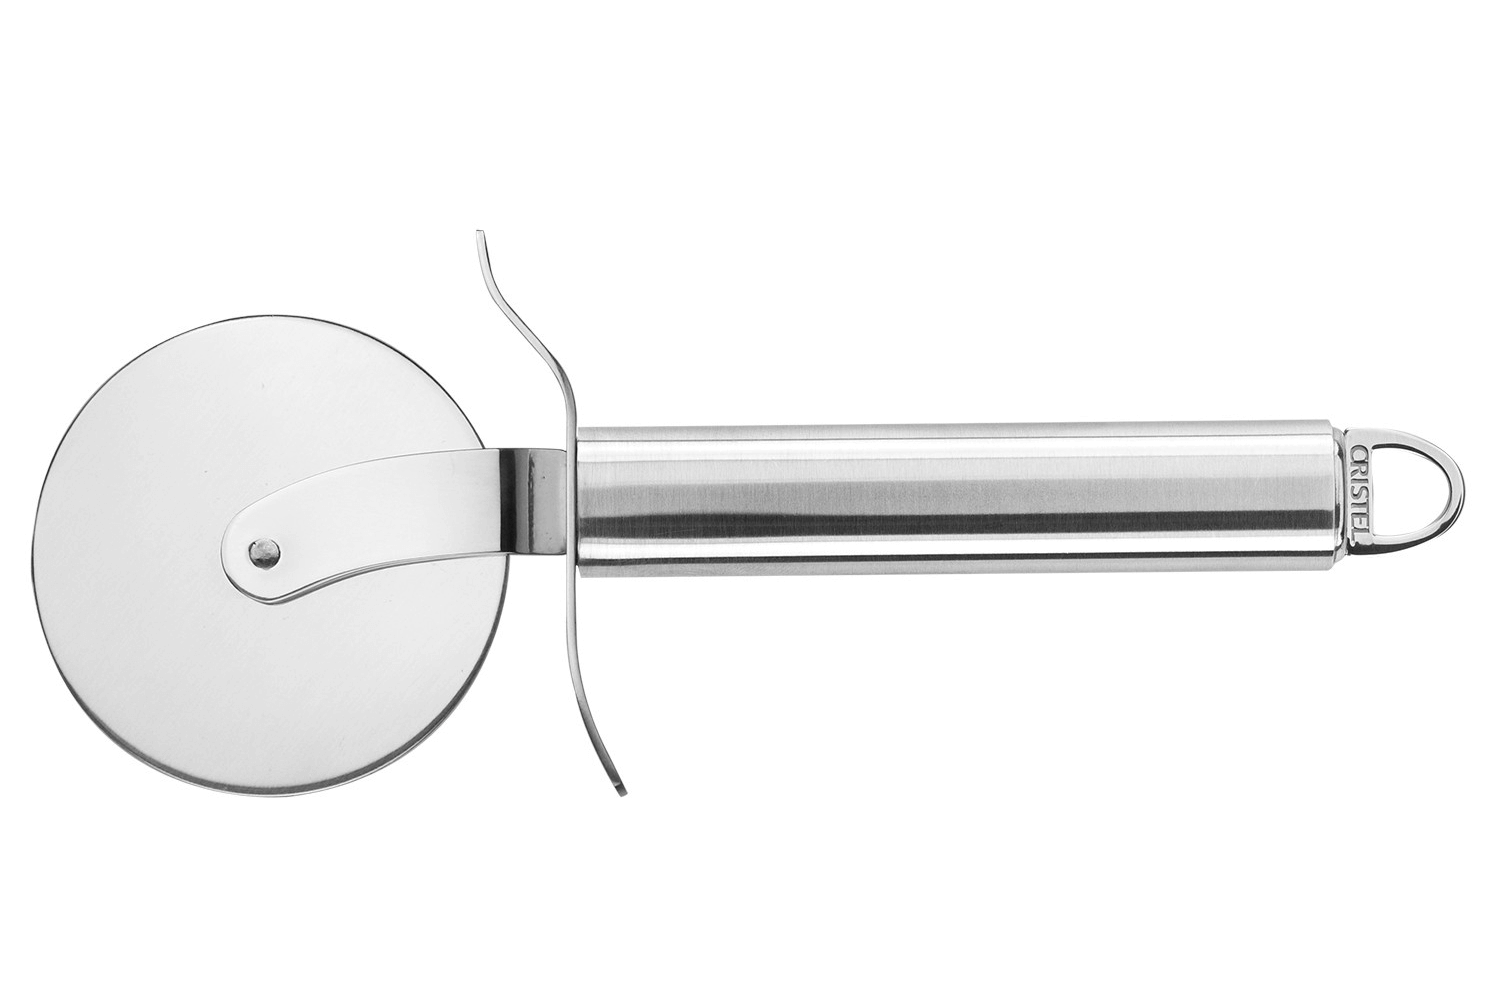 Ciseaux de cuisine - POC, Couteaux - Cristel